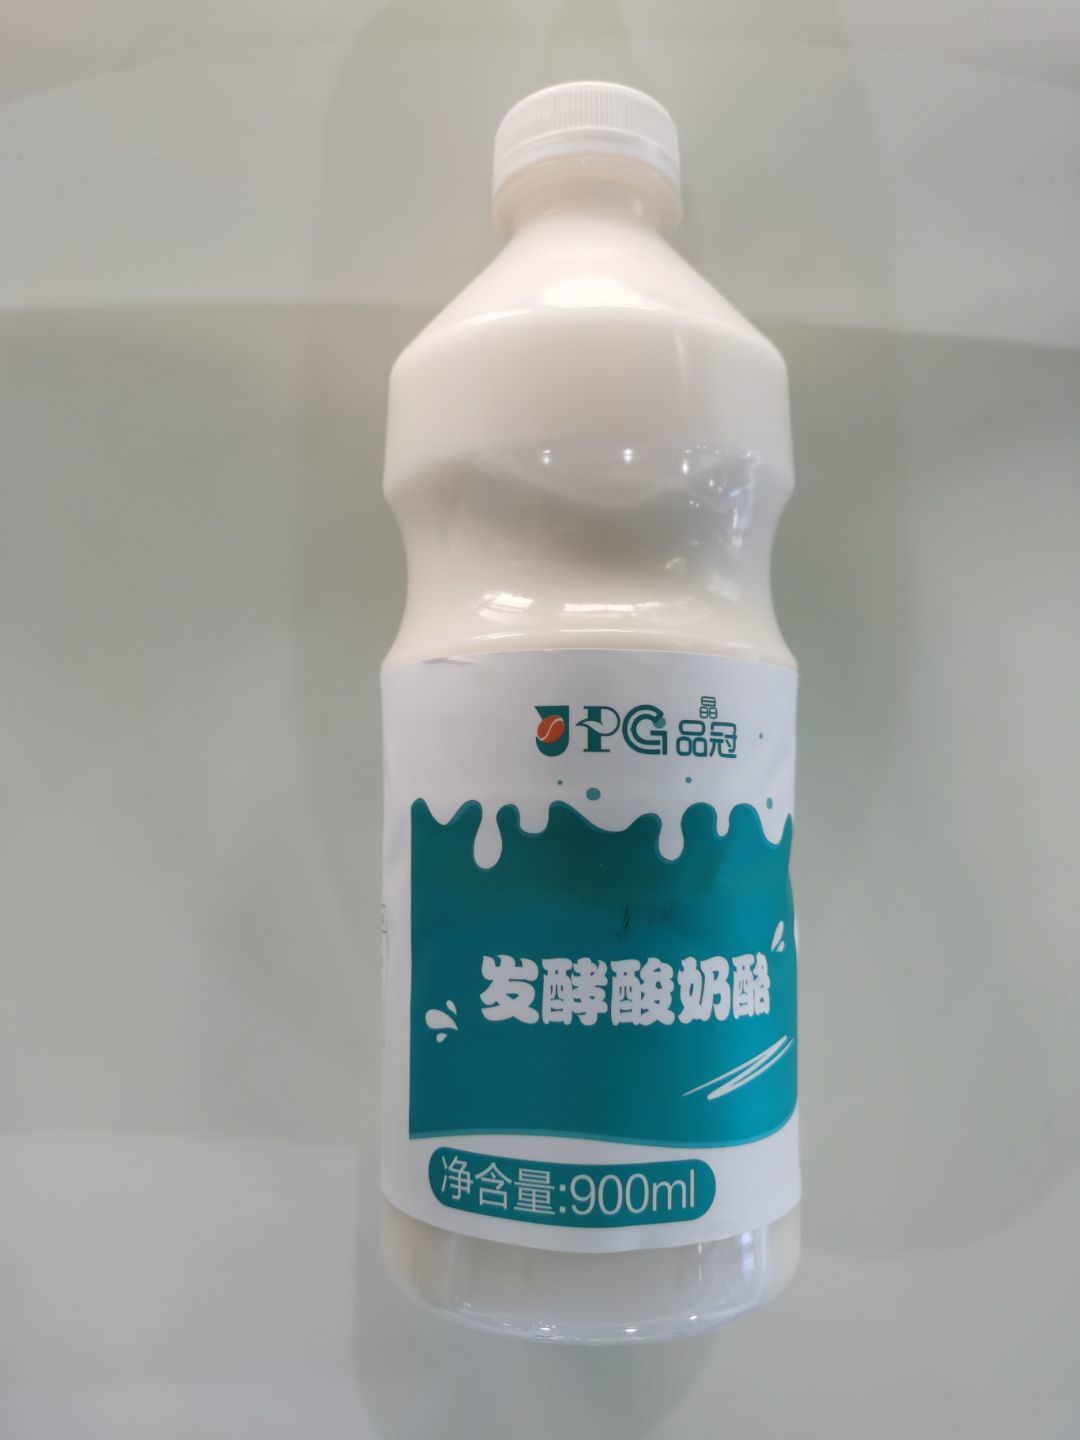 019drinks Jingpin Guang Fermented Yoghurt